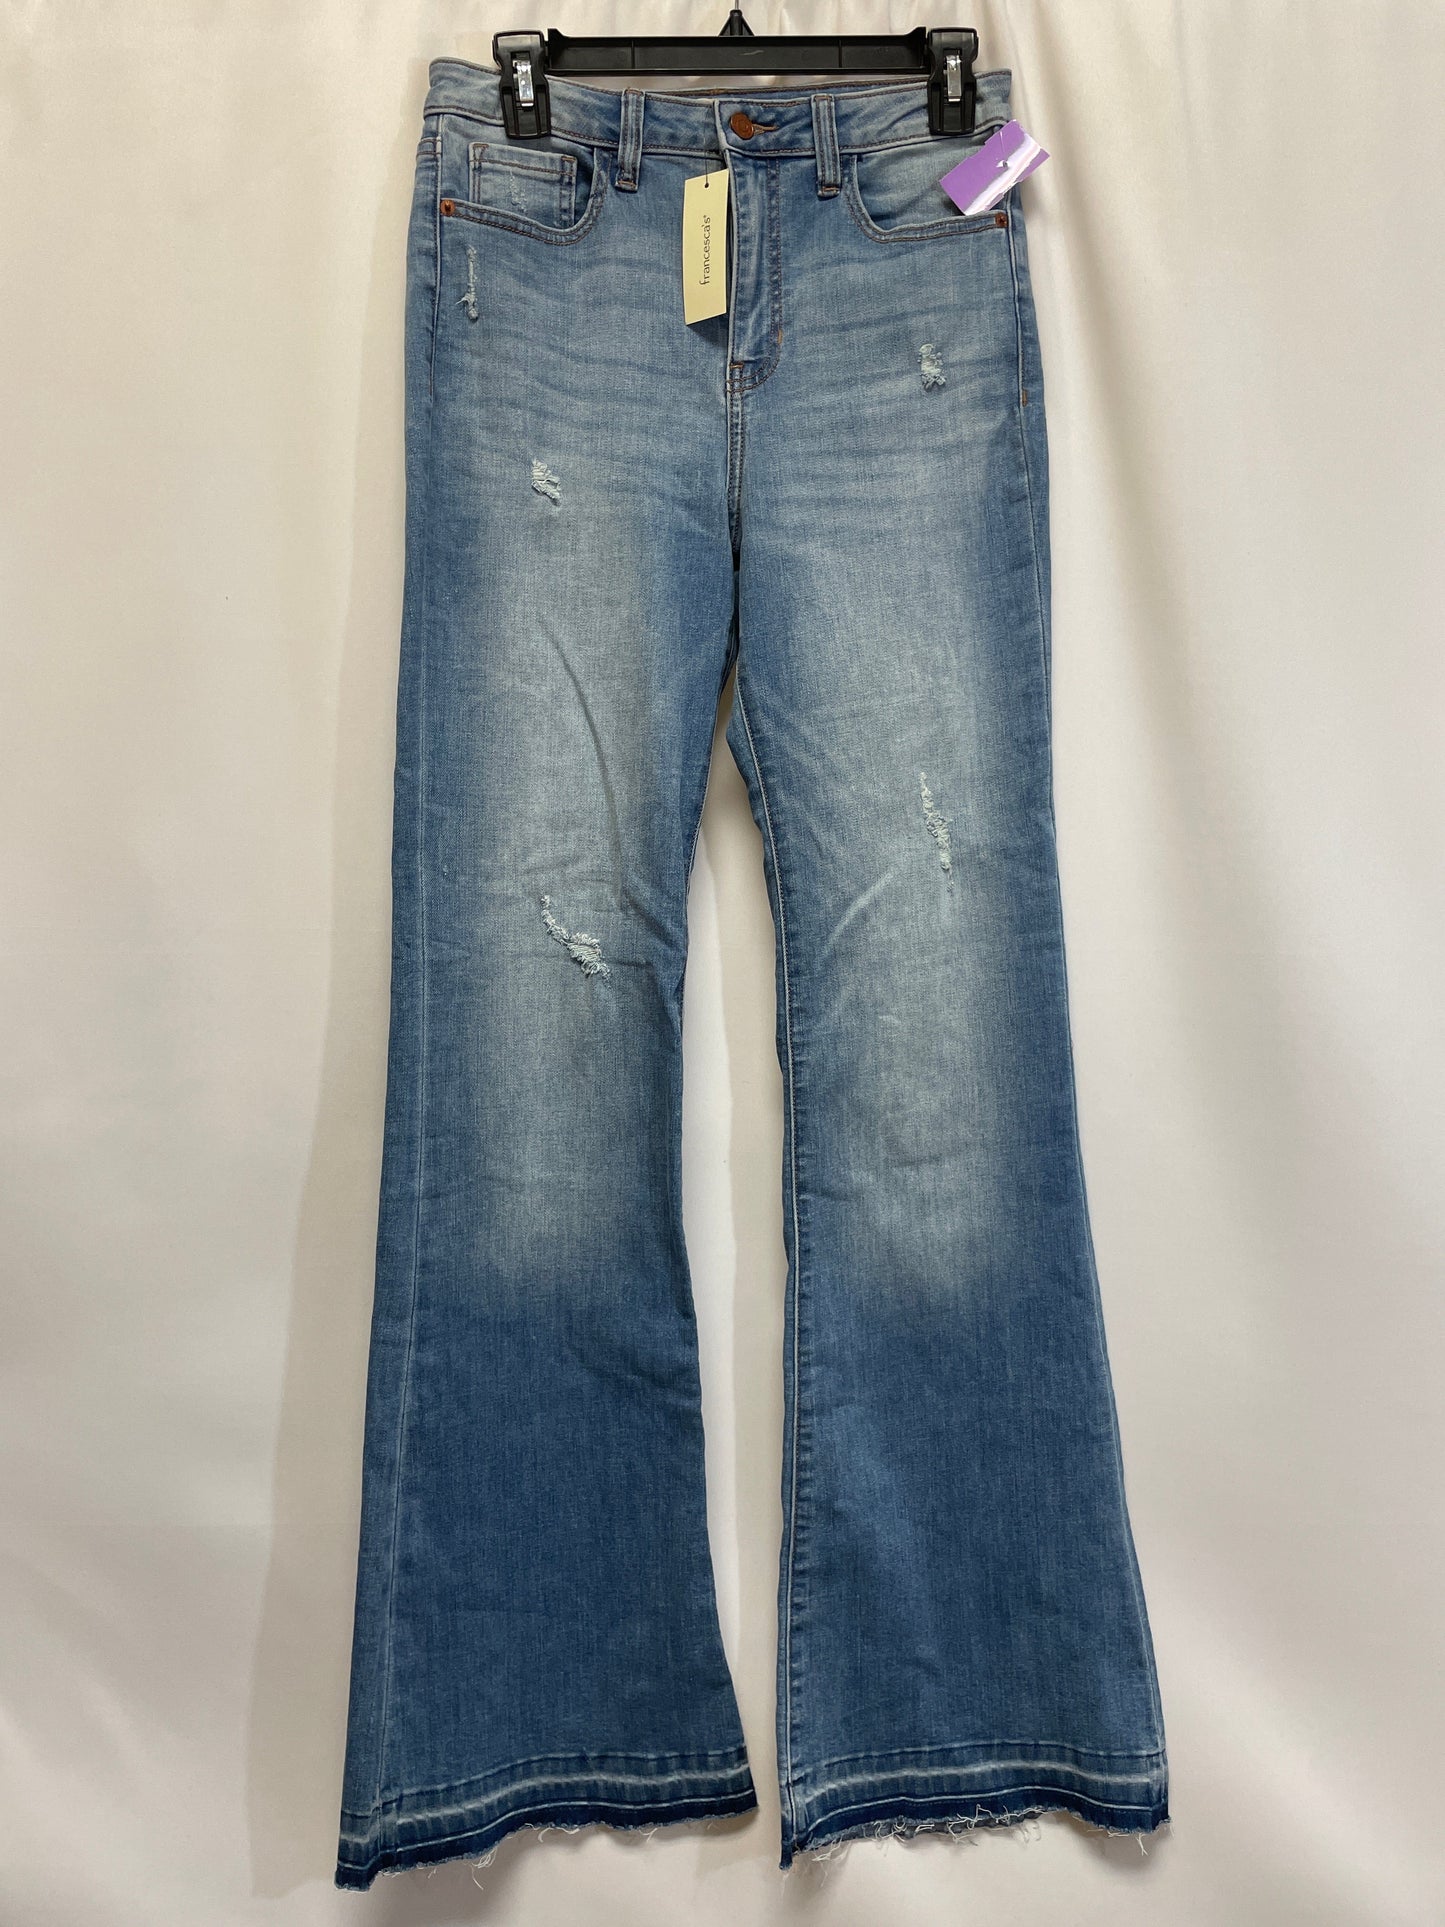 Blue Denim Jeans Boot Cut Francesca's, Size 4